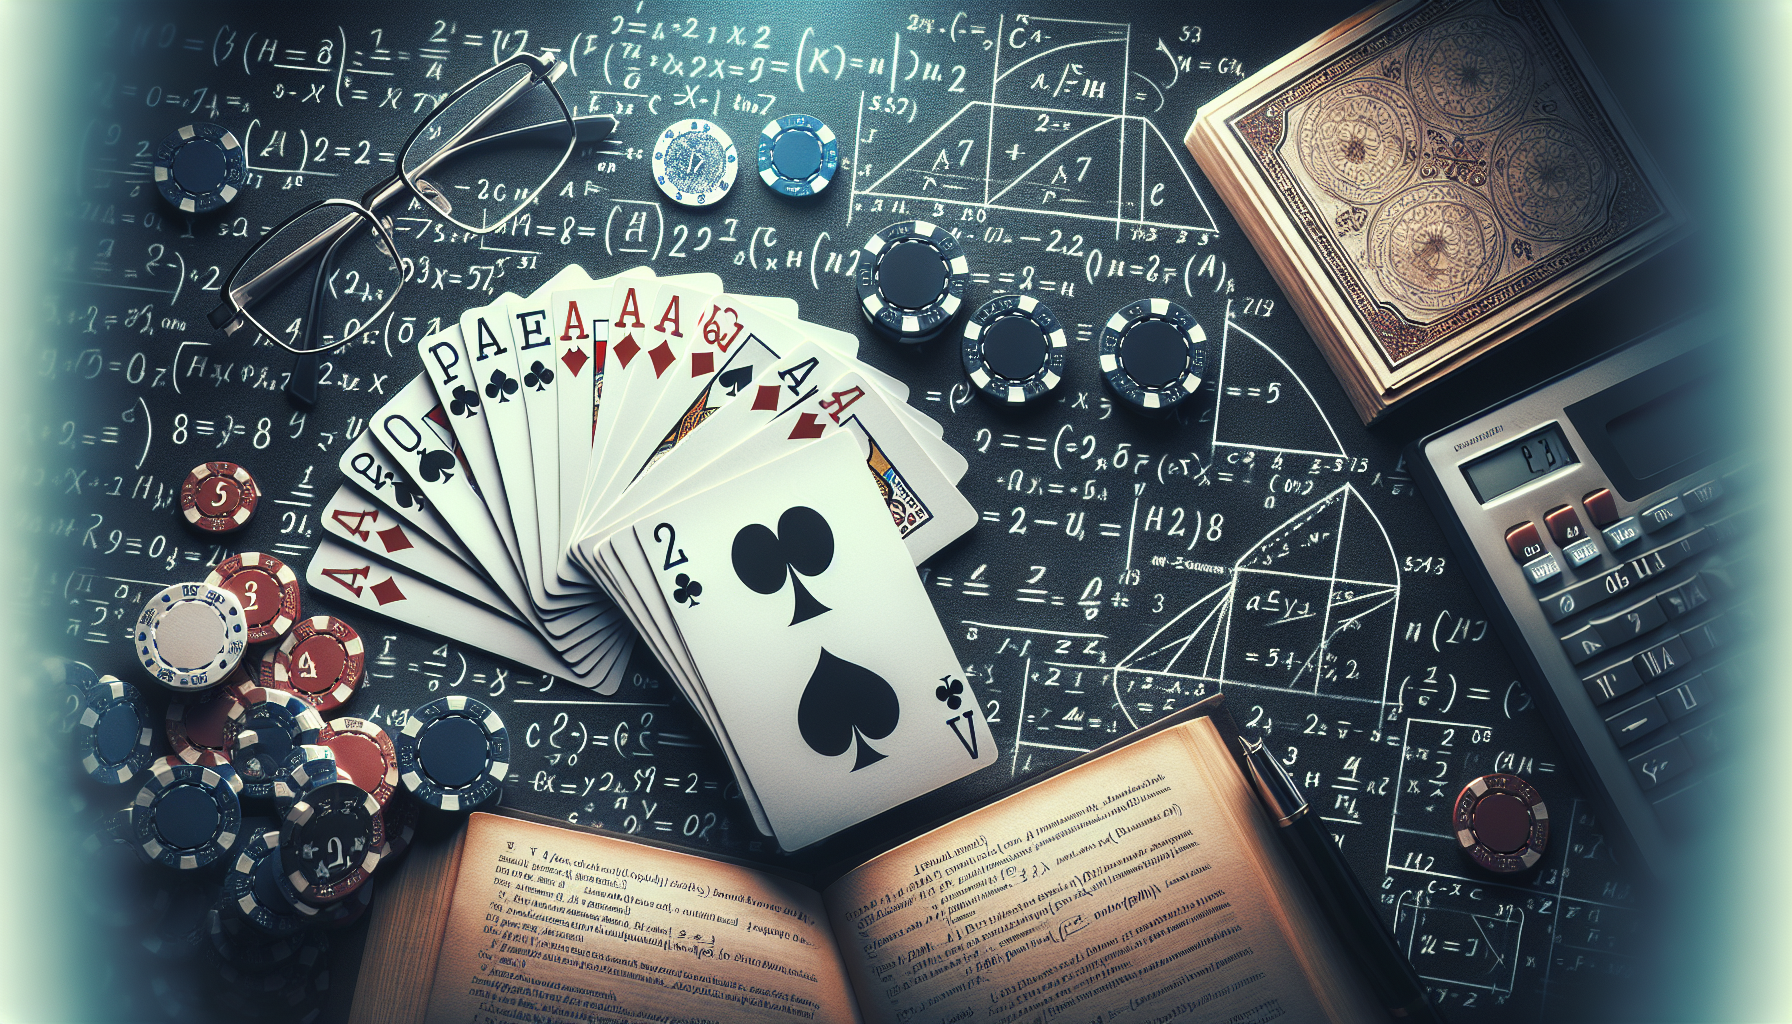 découvrez l'incroyable mariage entre le poker et les mathématiques, et apprenez comment ces disciplines se combinent pour optimiser vos stratégies de jeu. un aperçu fascinant de la complexité et de la logique derrière le poker.